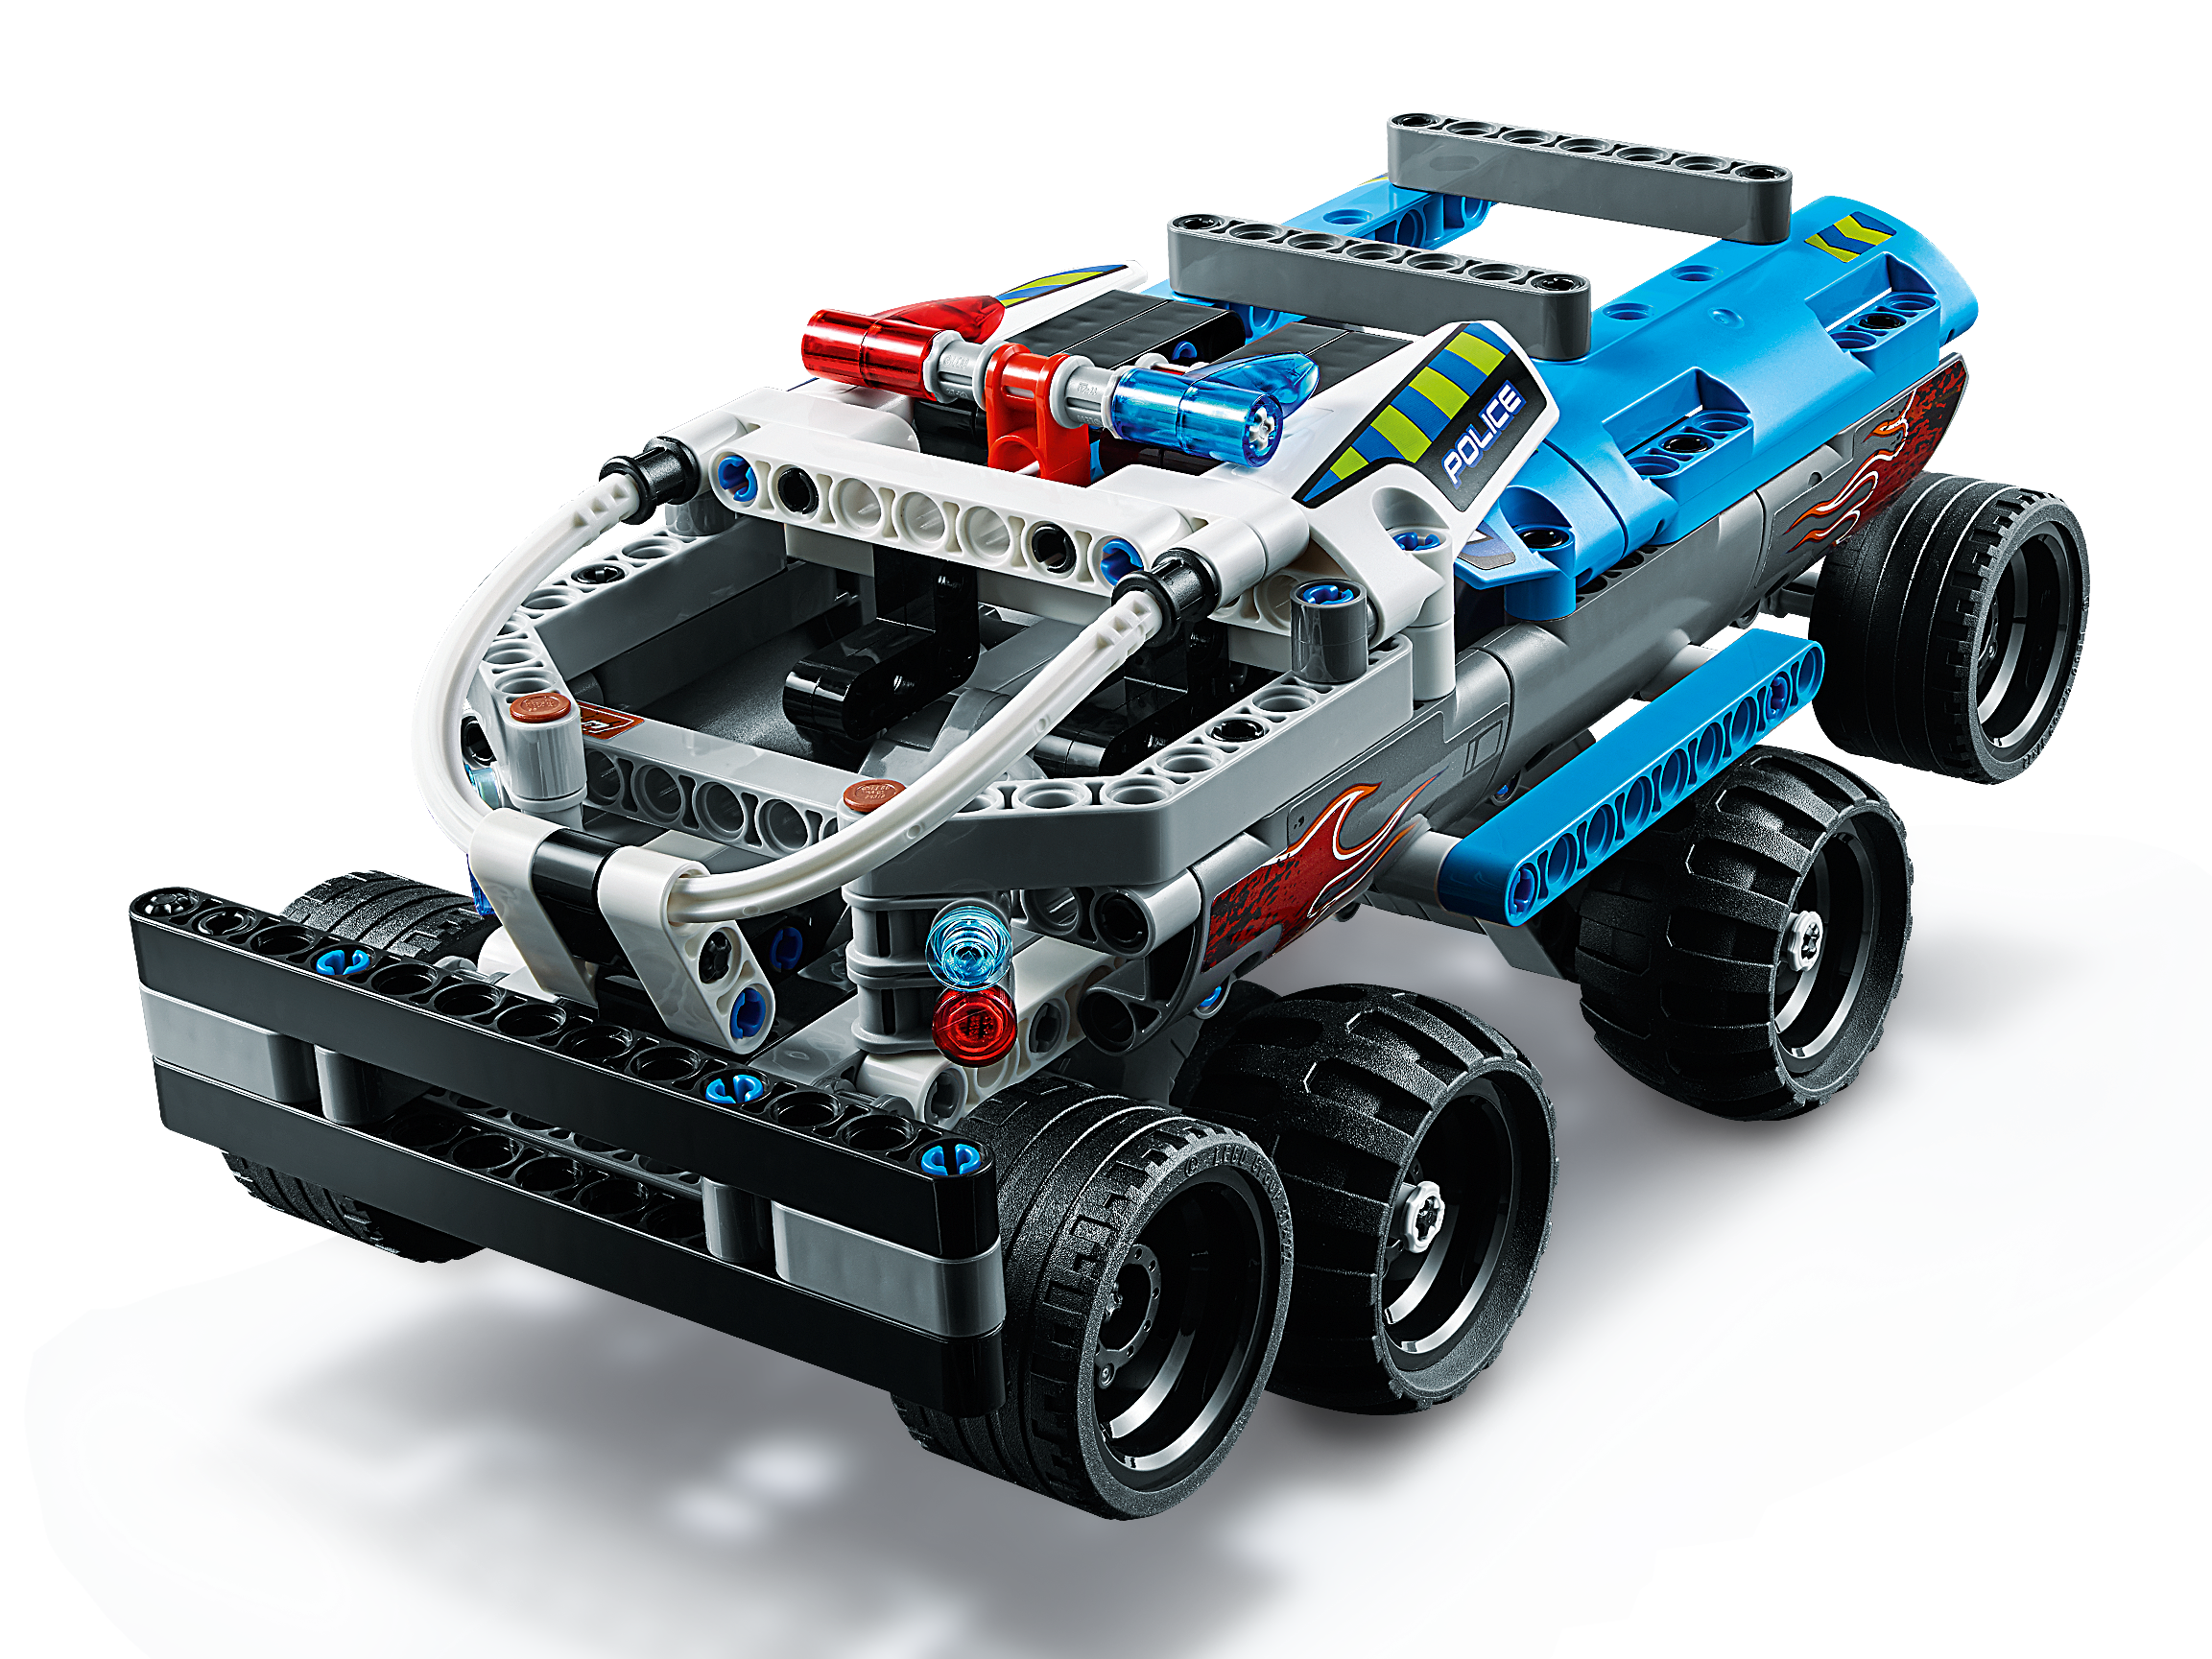 42090 for sale online LEGO Getaway Truck Technic